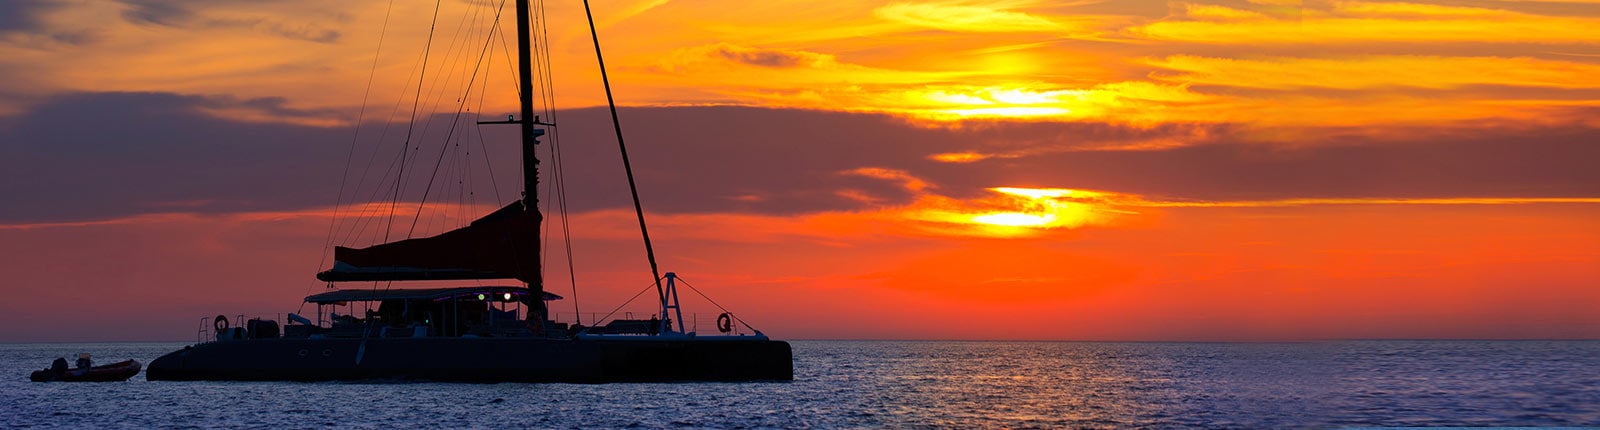 Sailboat on the coast of Nassau, Bahamas during sunset 